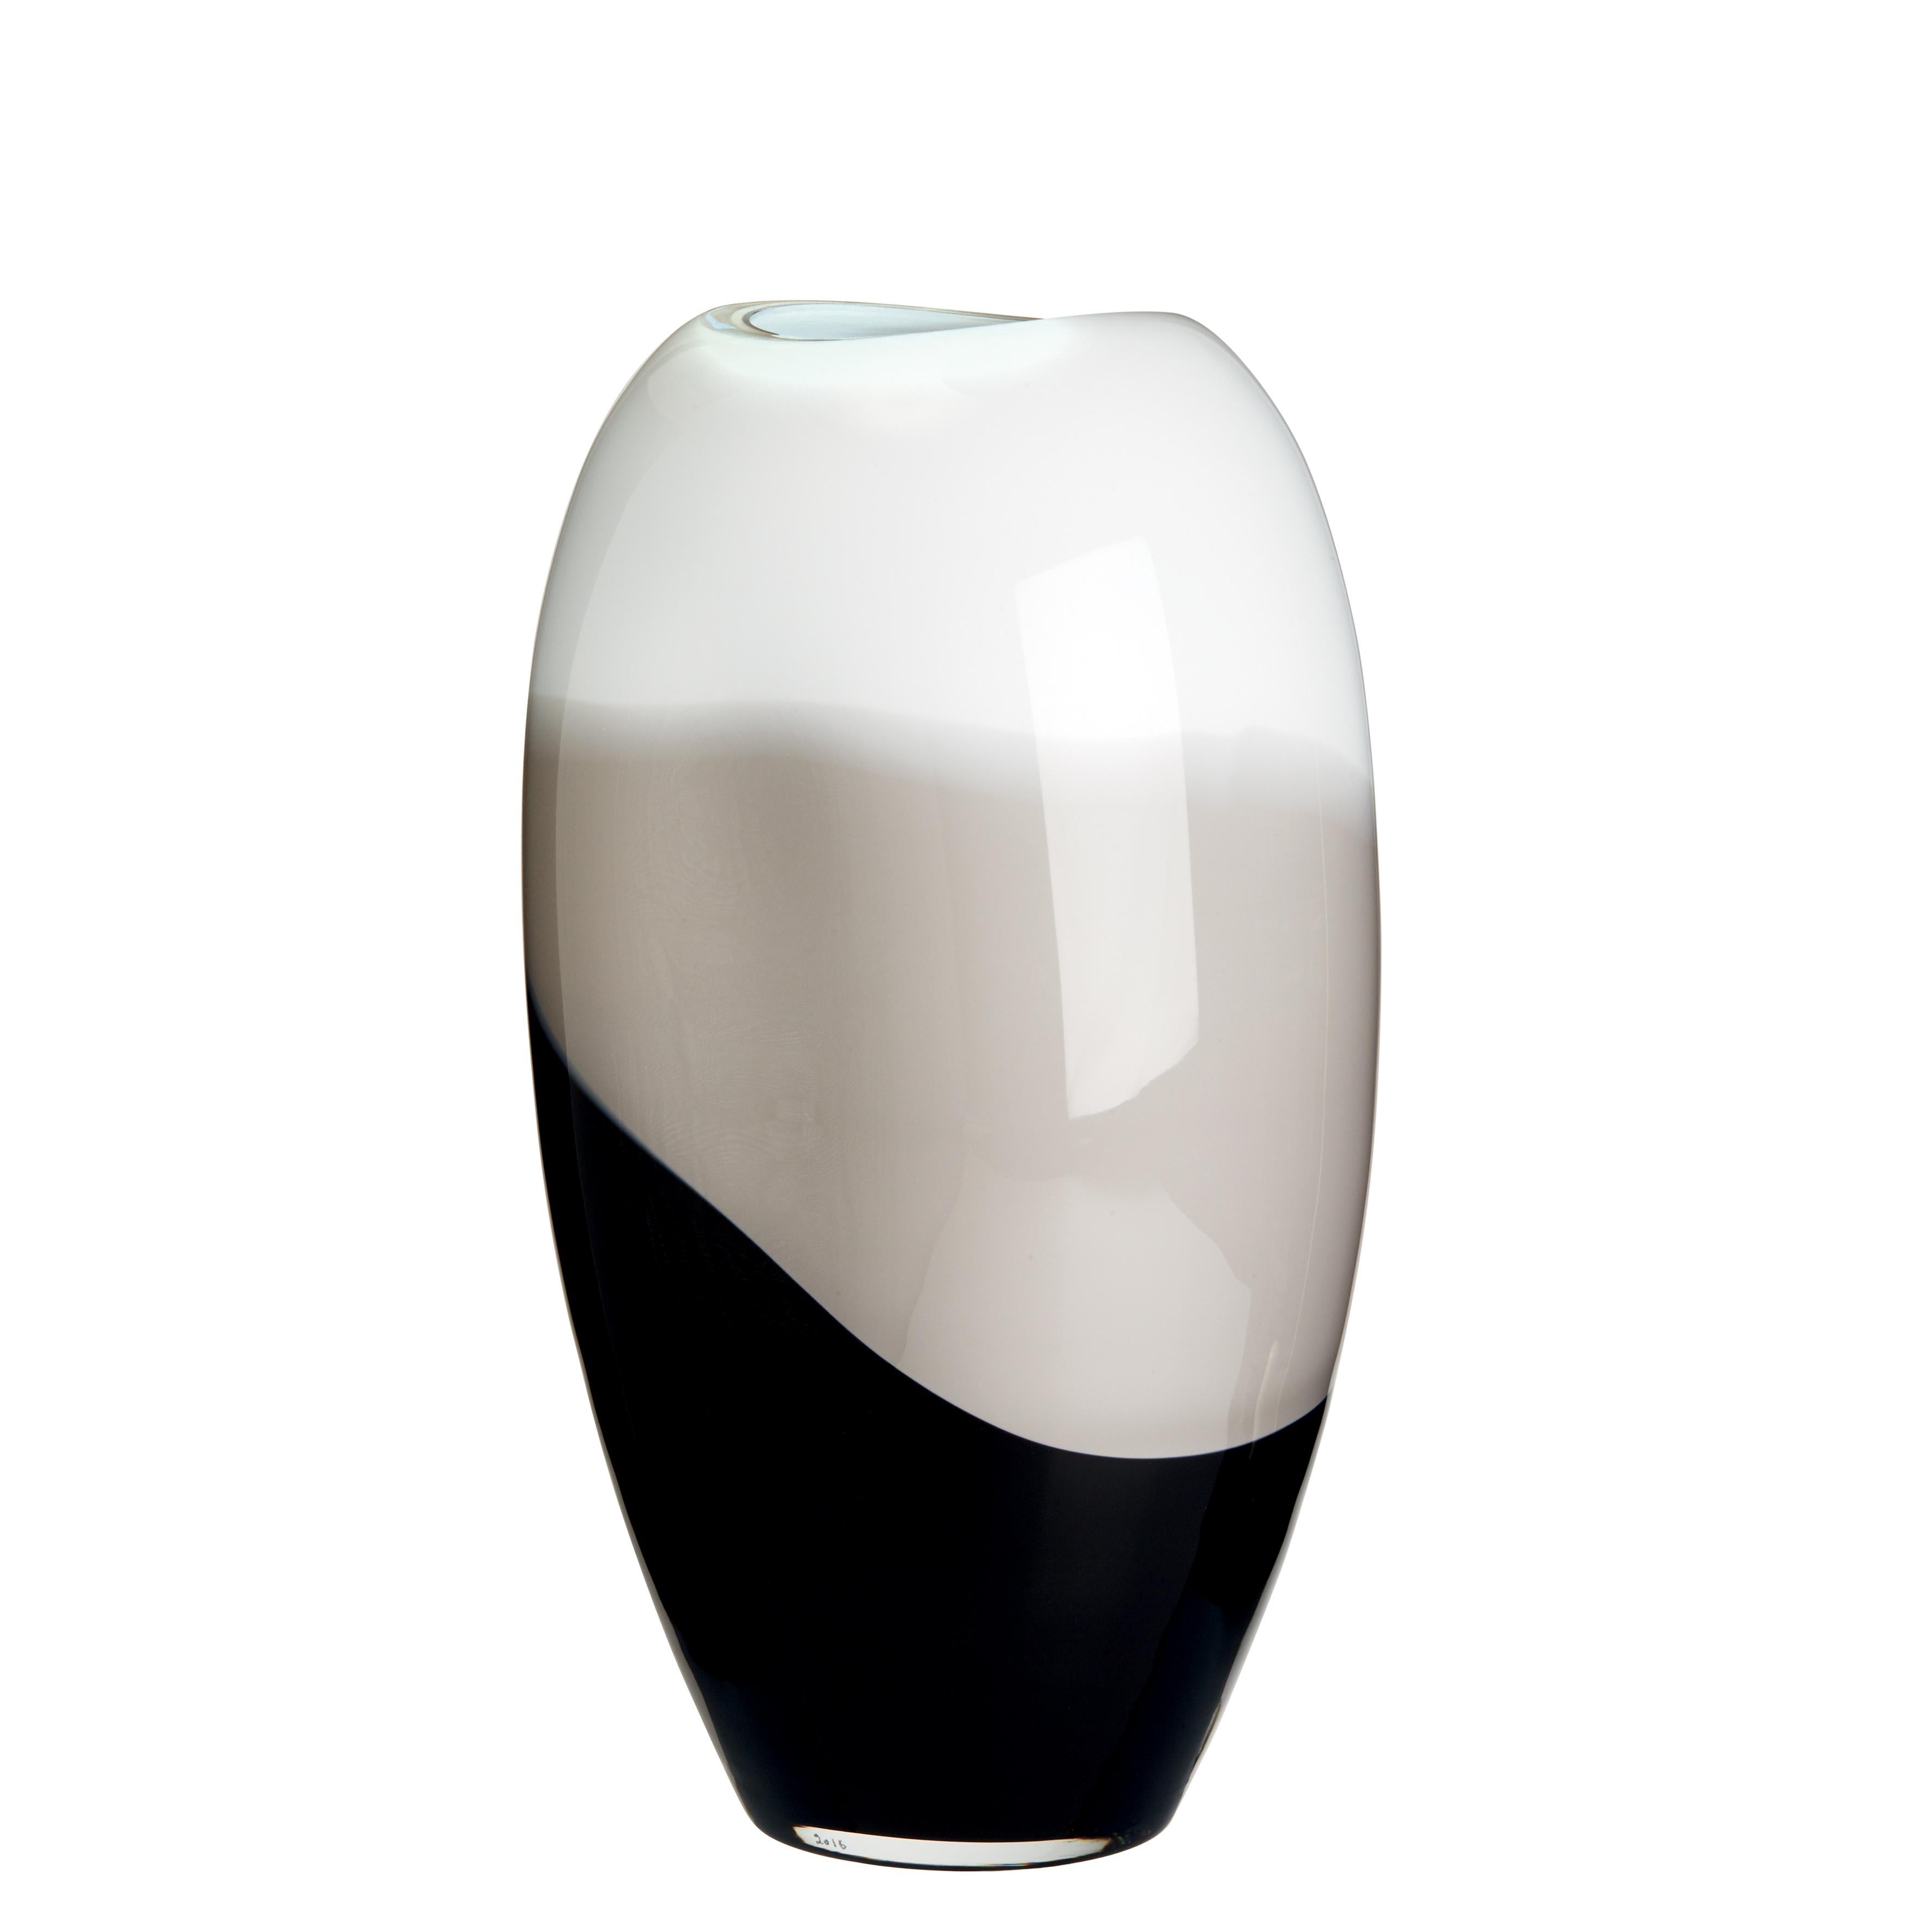 Carlo Moretti: Ellisse-Vase aus elfenbeinfarbenen, grauen und schwarzen Streaks